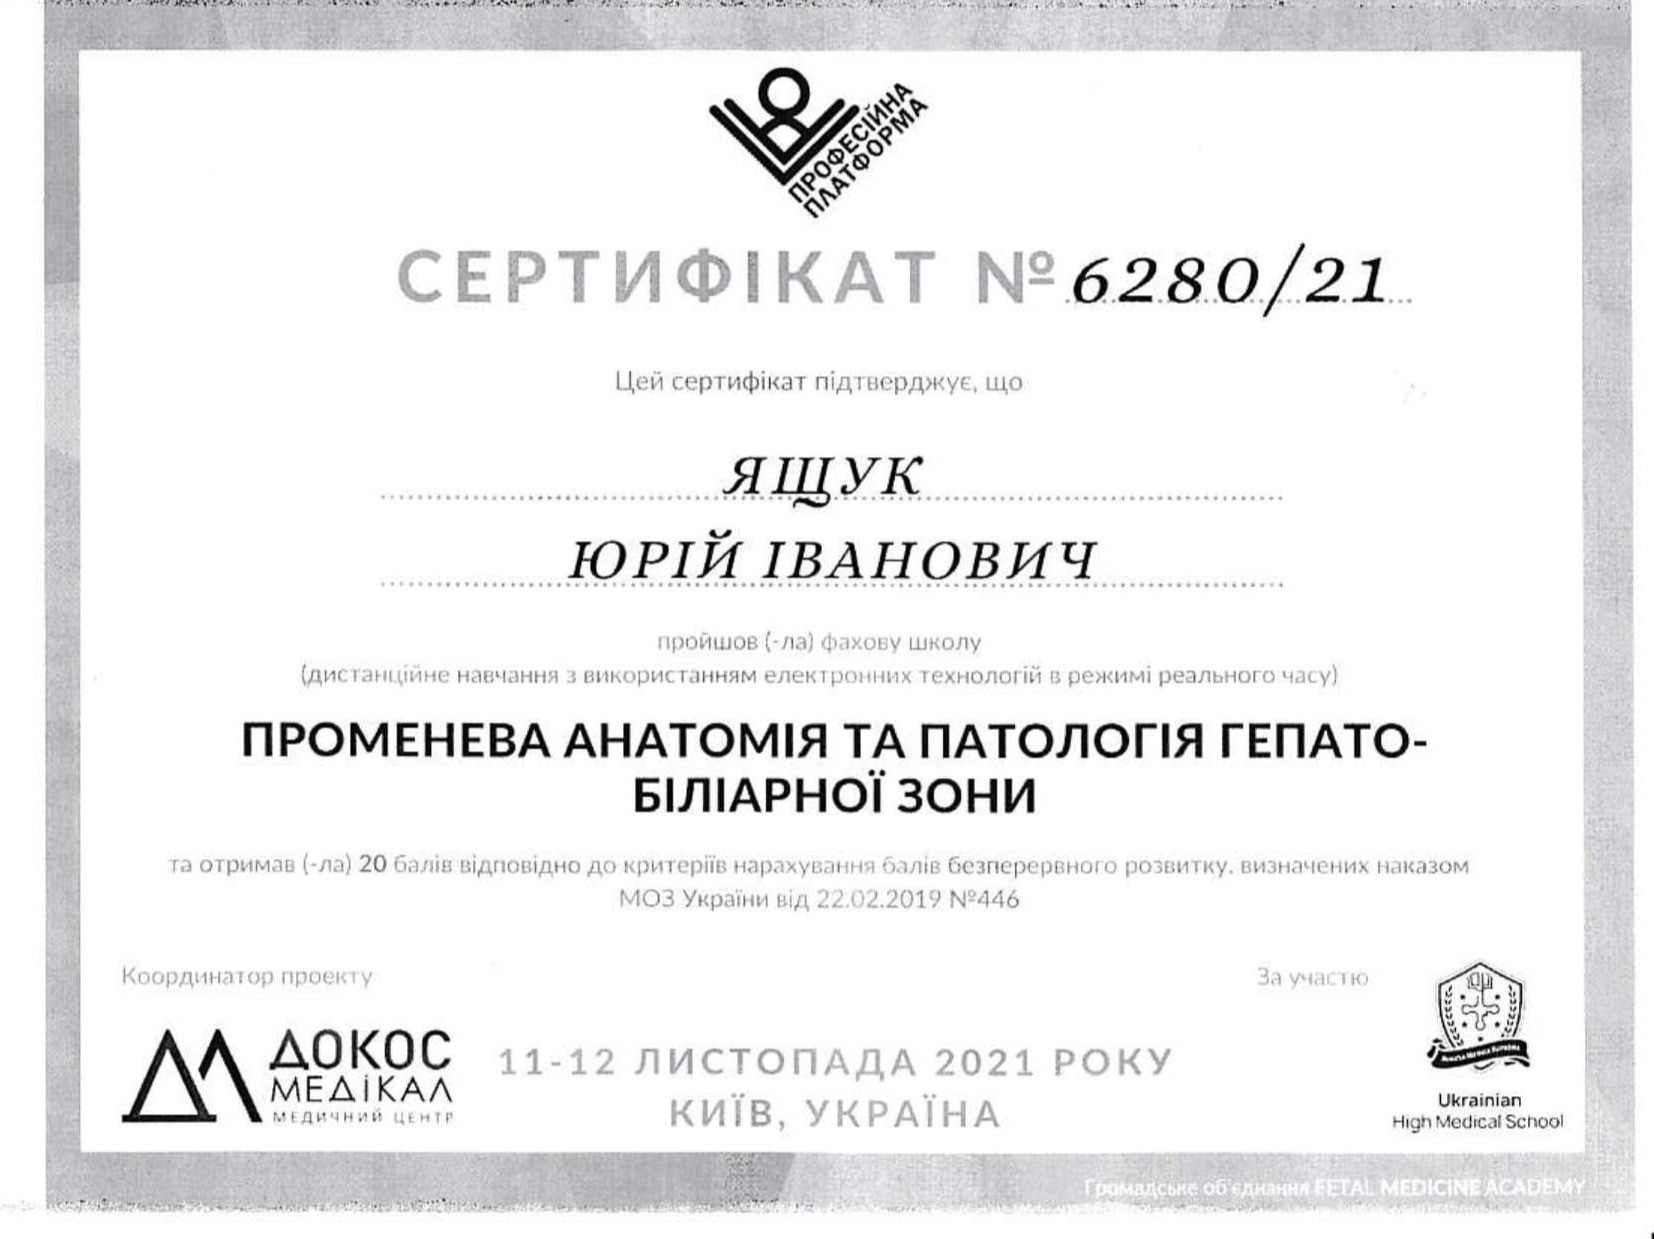 Сертификат об участии в специализированной школе